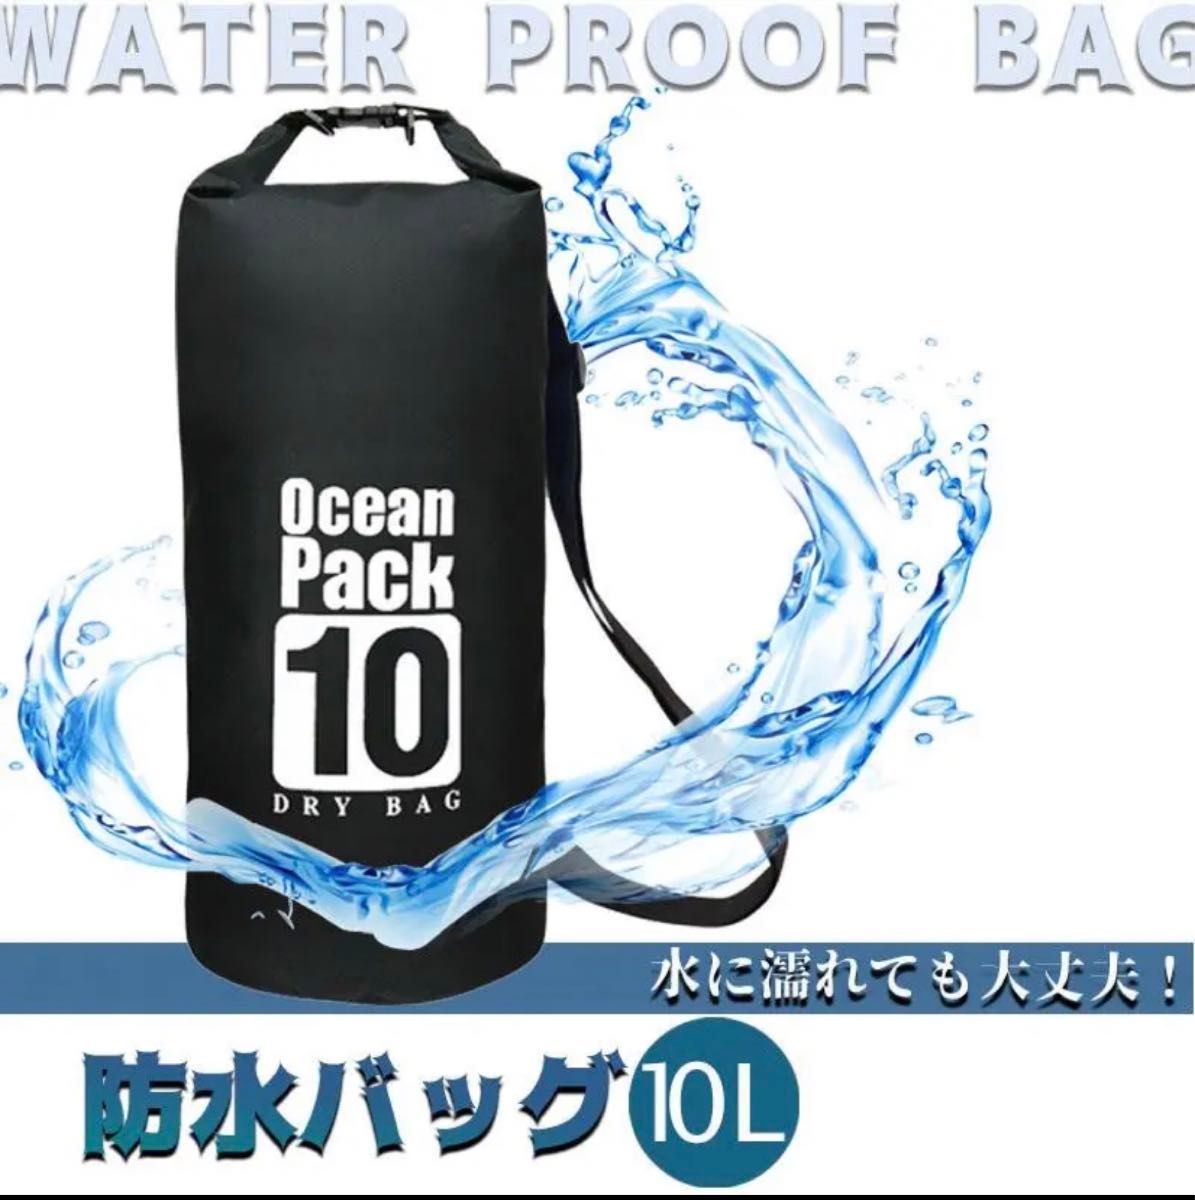 10L 防水バッグ ドライバッグ コンパクト バッグ プール 海水浴 アウトド